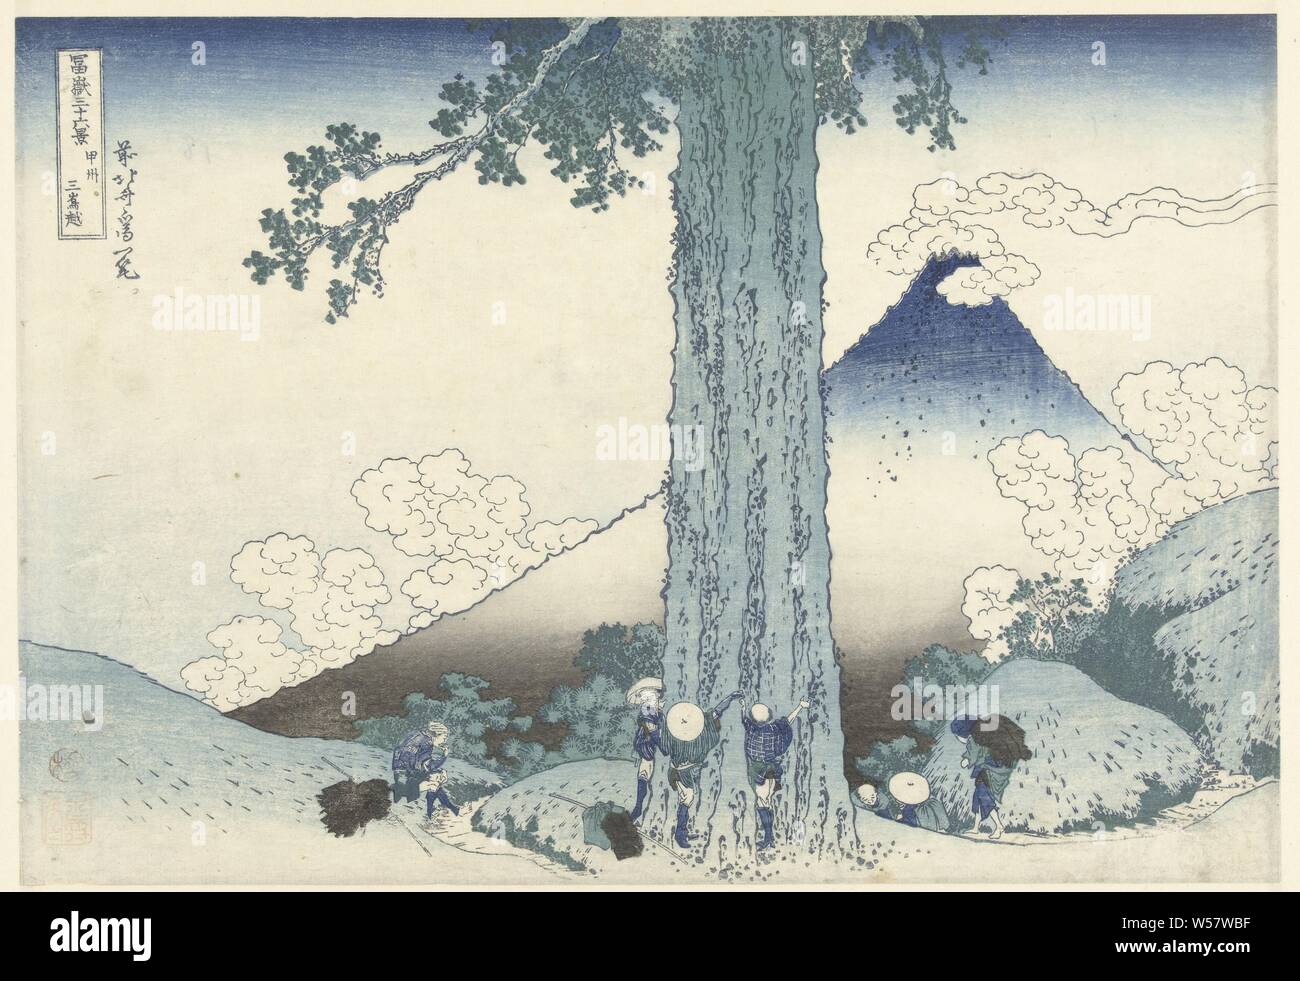 Mishima Mountain Pass in Kai Koshu Provinz Mishimagoe (Titel auf Objekt) 36 Blick auf Mount Fuji (Titel der Serie) Fuji sanjurokkei (Titel der Serie auf Objekt), Blick auf einem Pass mit Reisenden und der Oberseite der Fuji im Hintergrund und im Vordergrund ein großer Baum, wo drei Reisende die Größe, Fuji, der Berg, Katsushika Hokusai (auf Objekt erwähnt), 1829-1833, Papier, Farbholzschnitt, H 368 mm x B 254 mm Stockfoto